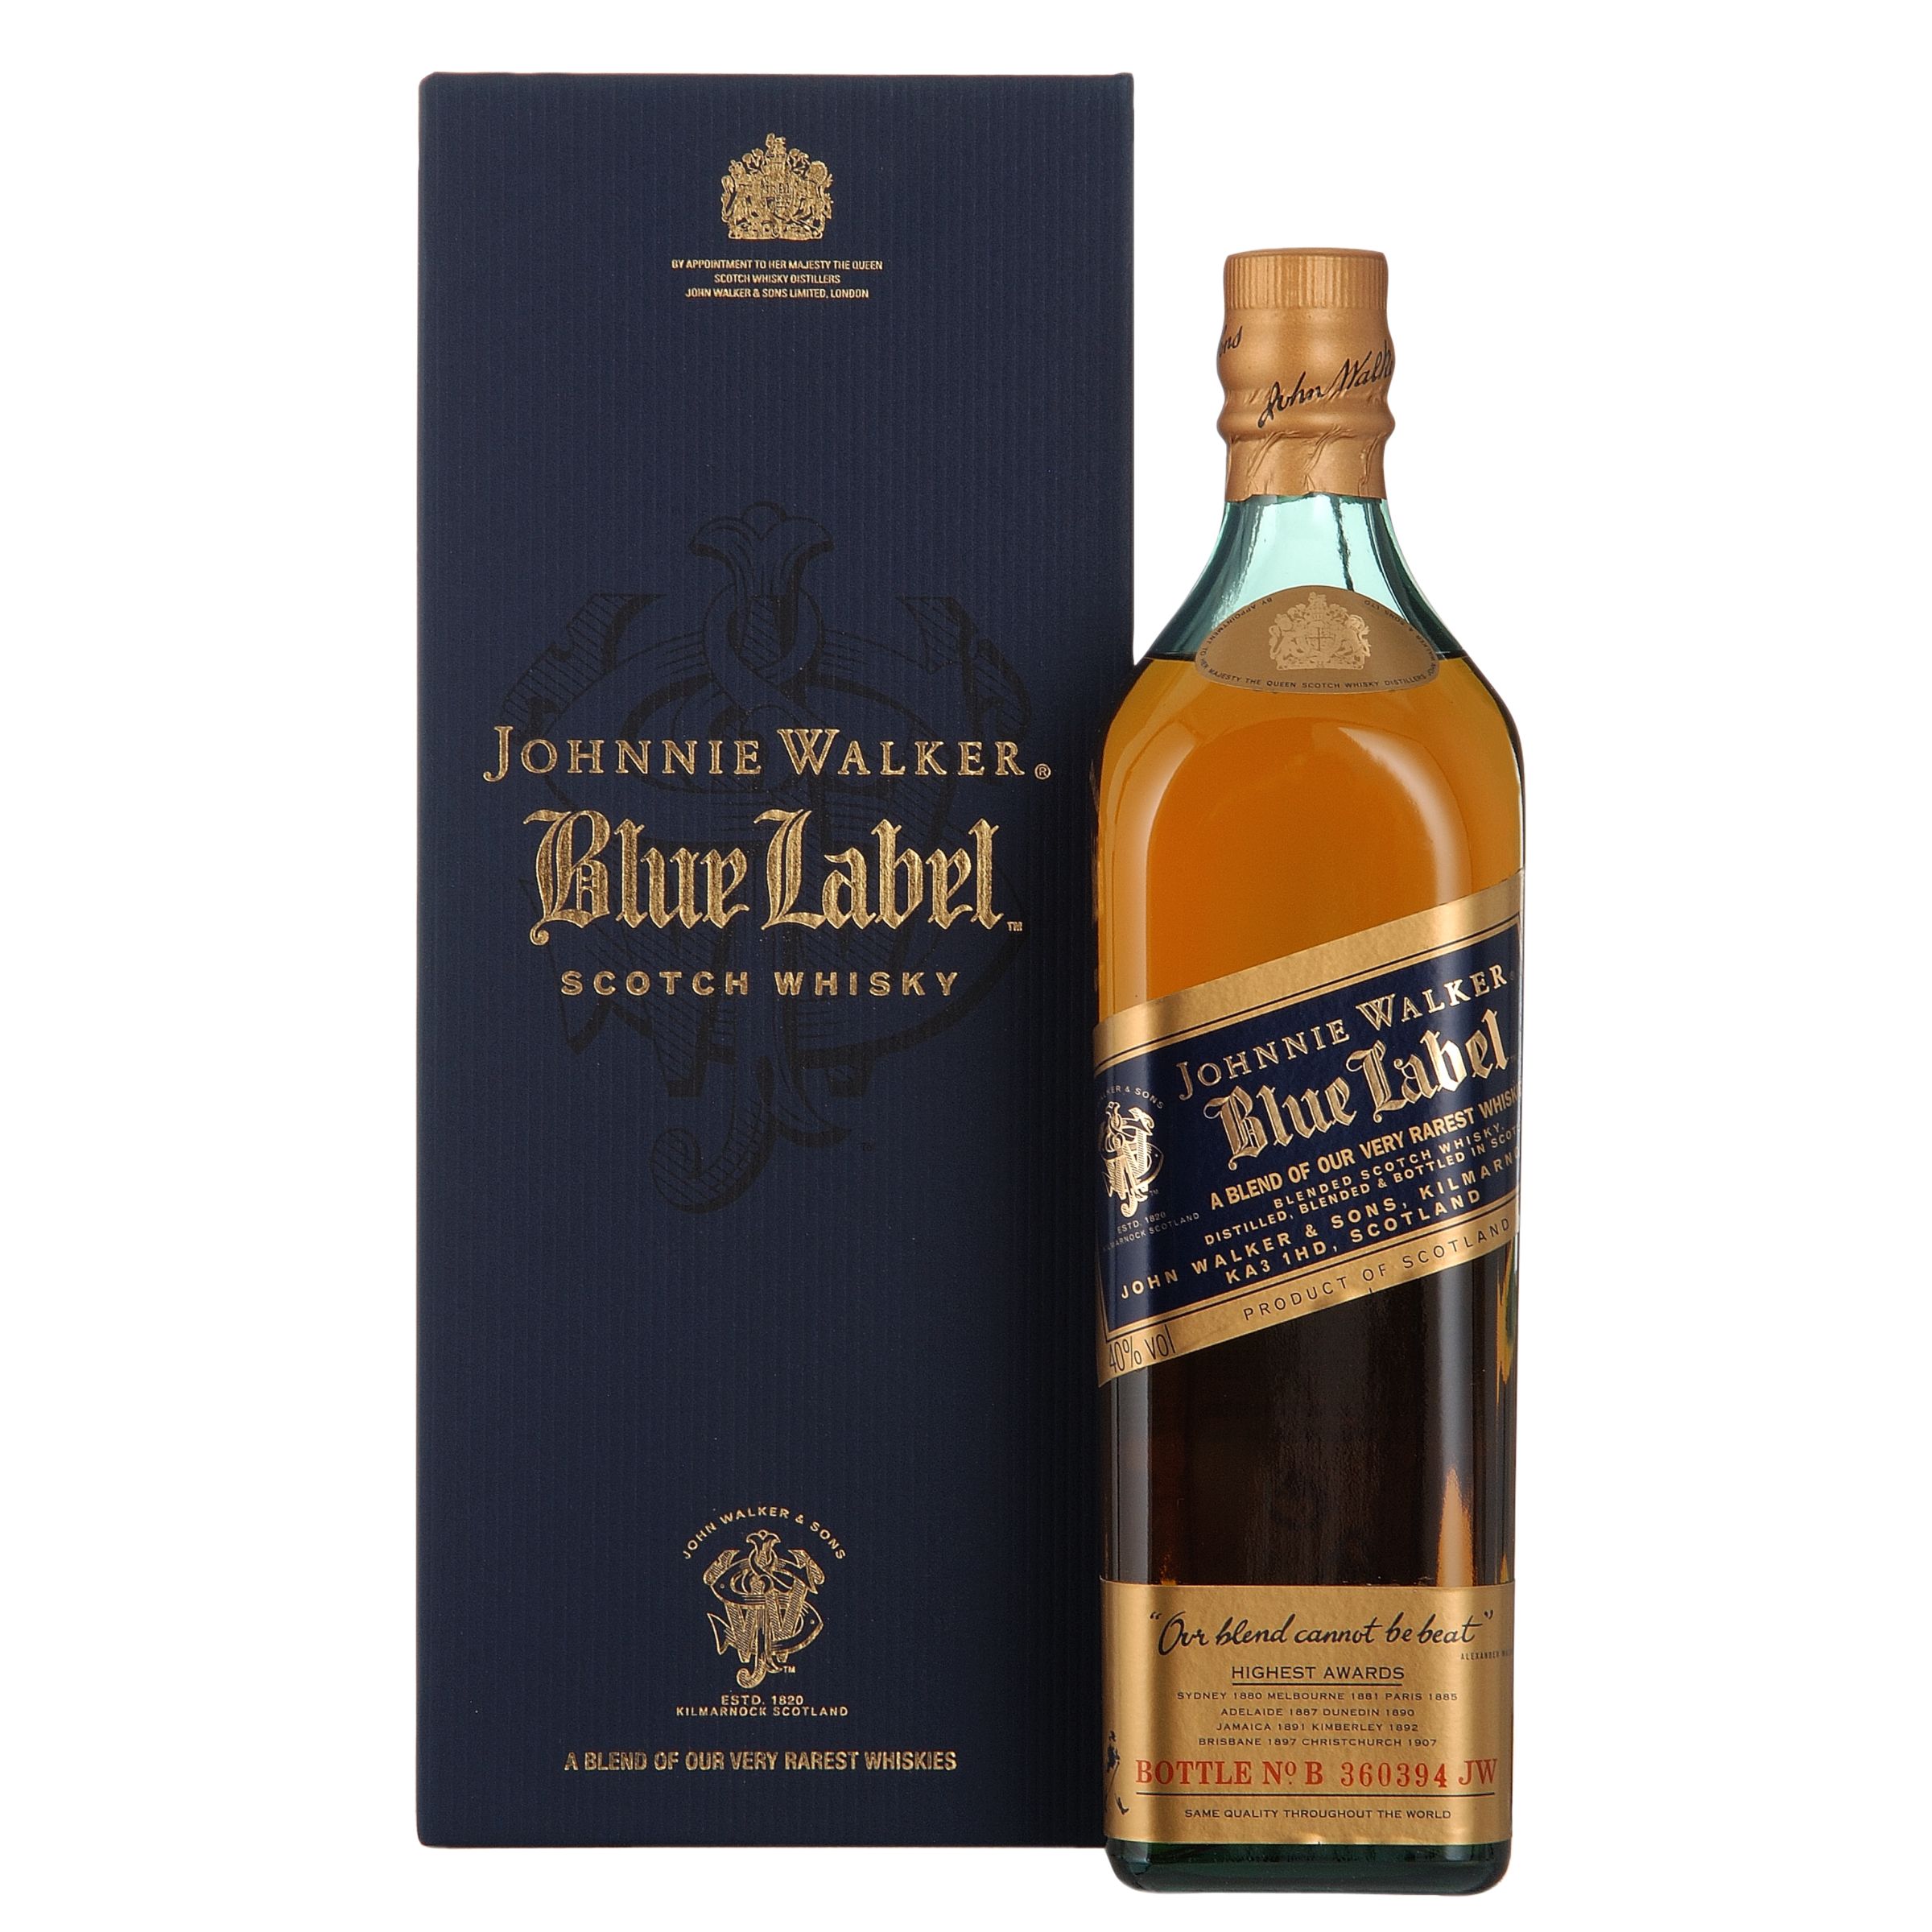 Johnnie Walker Blue Label Whisky at John Lewis